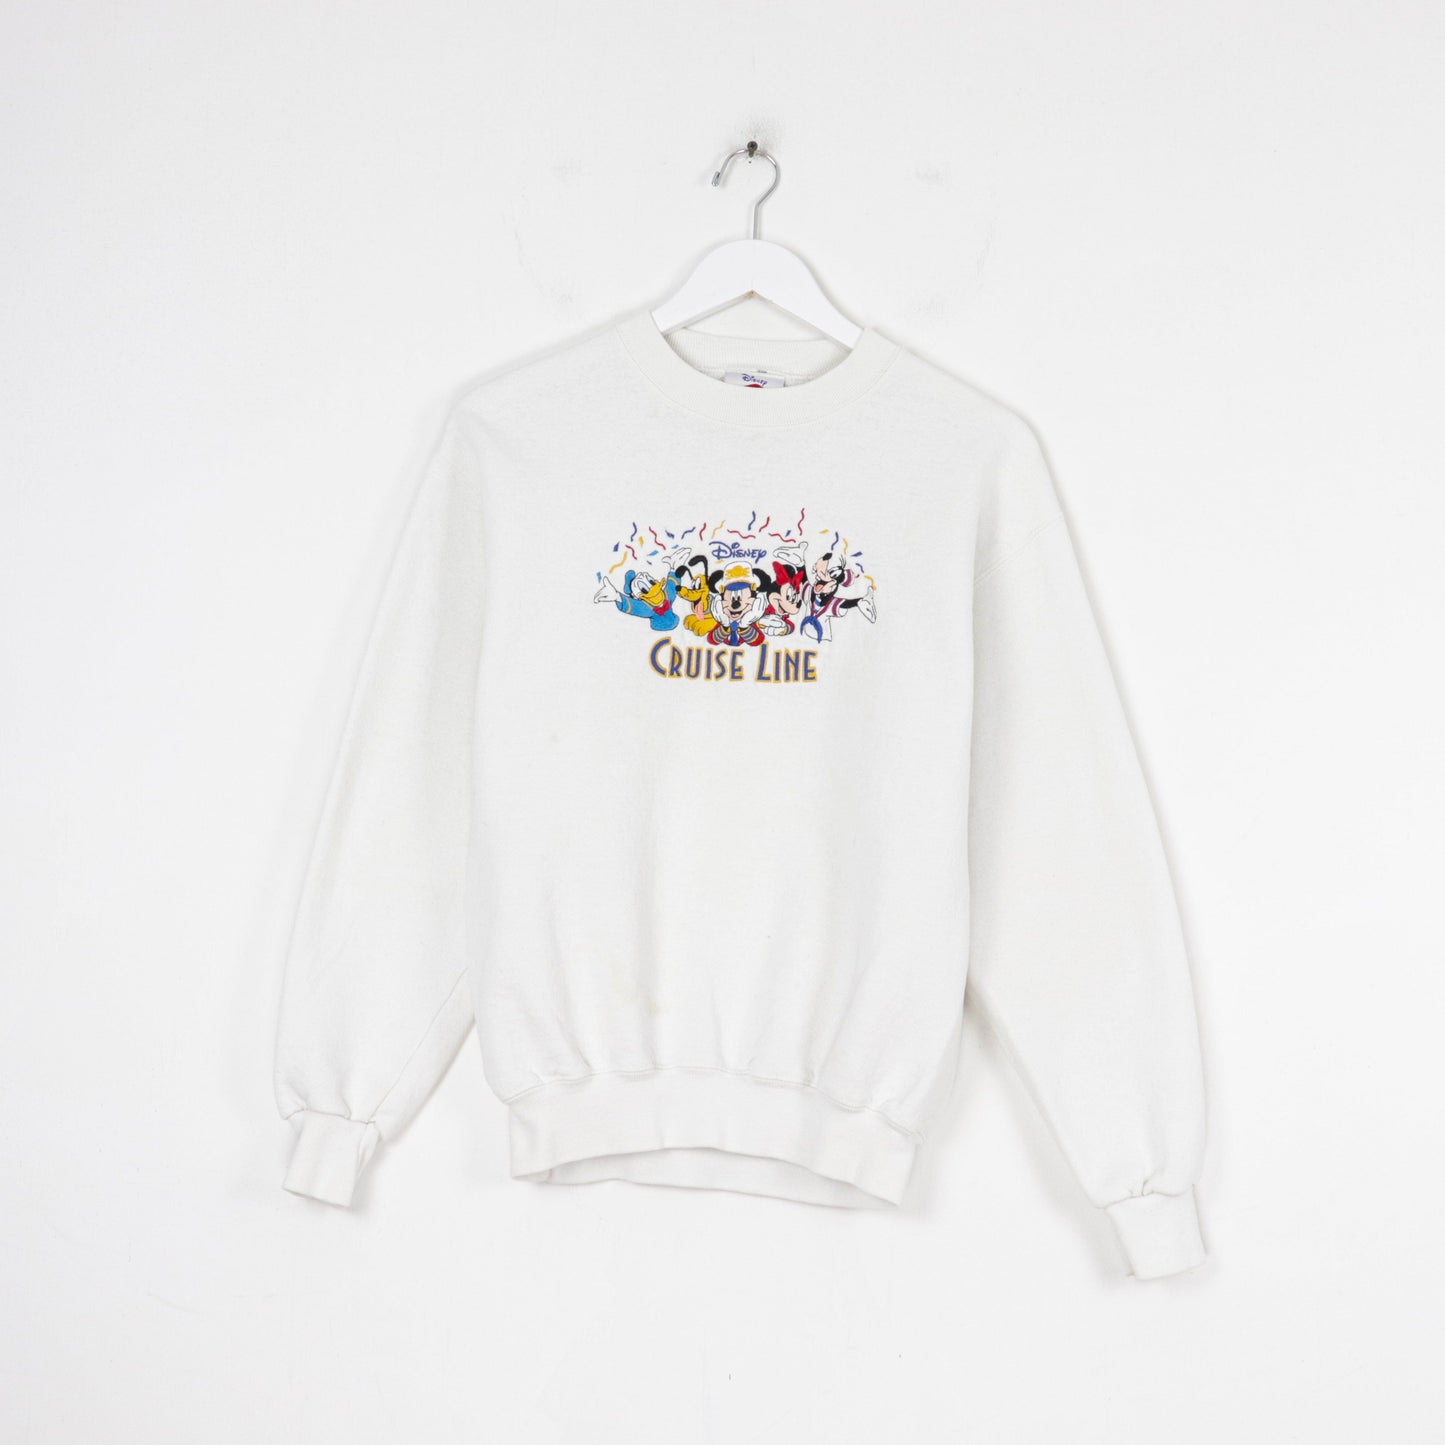 Other Sweatshirts & Hoodies Vintage Disney Cruise Line Sweatshirt Size Small